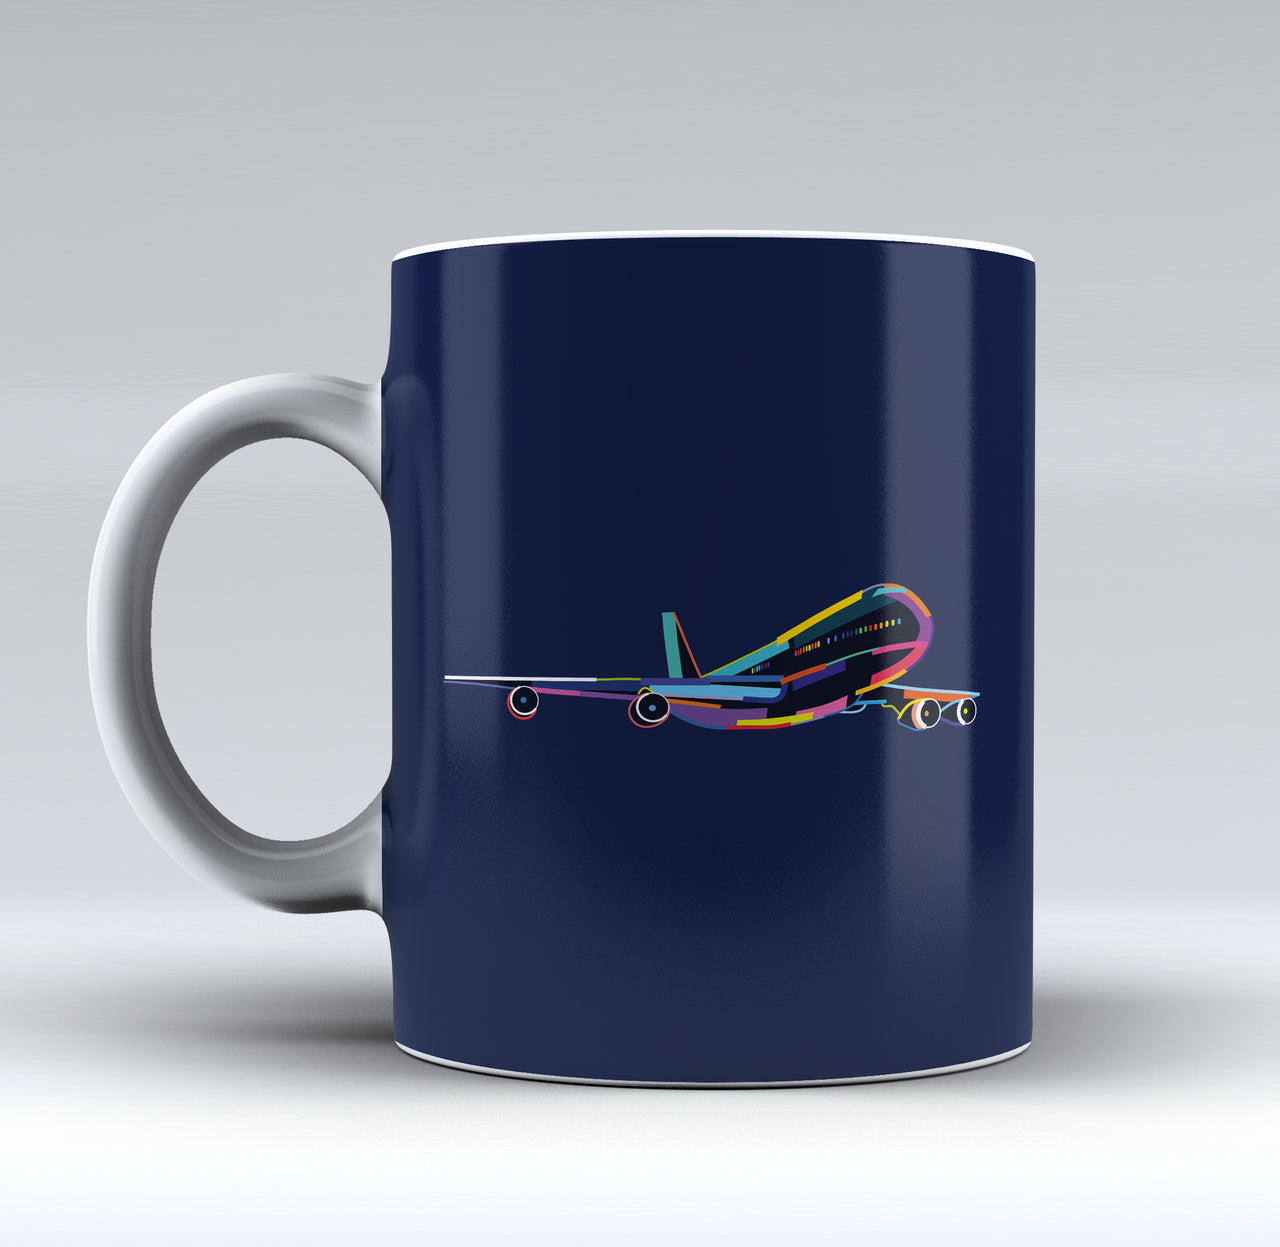 Multicolor Airplane Designed Mugs